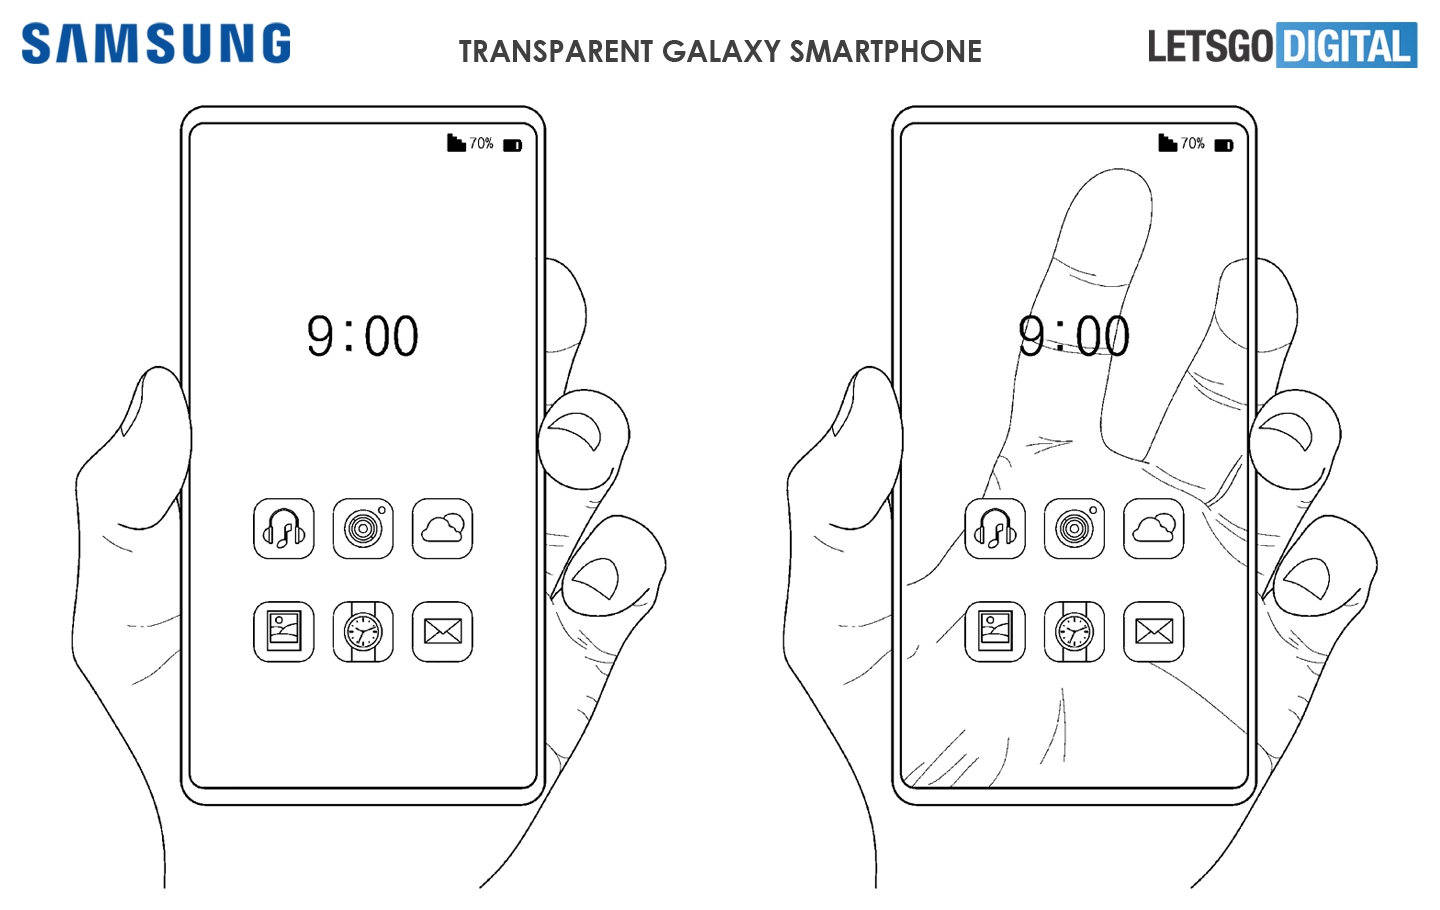 Diseño del teléfono transparente de Samsung